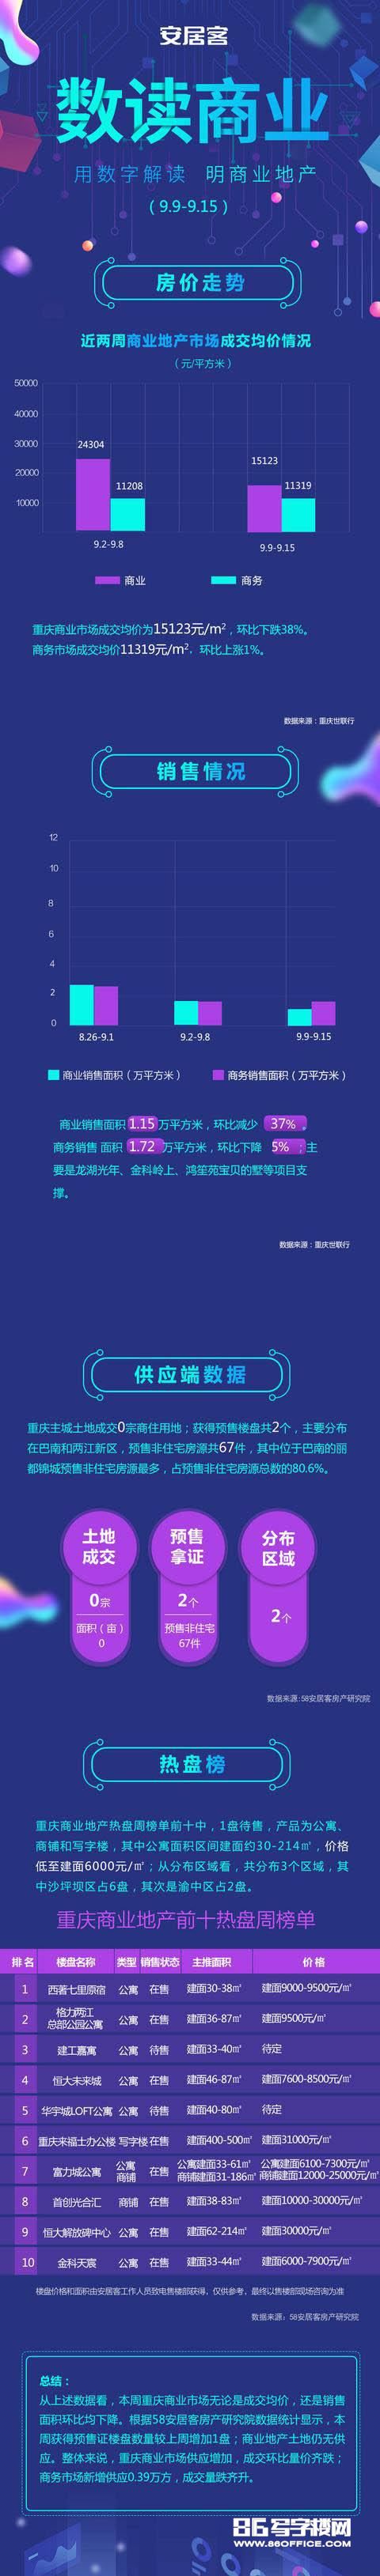 重庆商业市场供应增加 重庆来福士写字楼3万+元/㎡